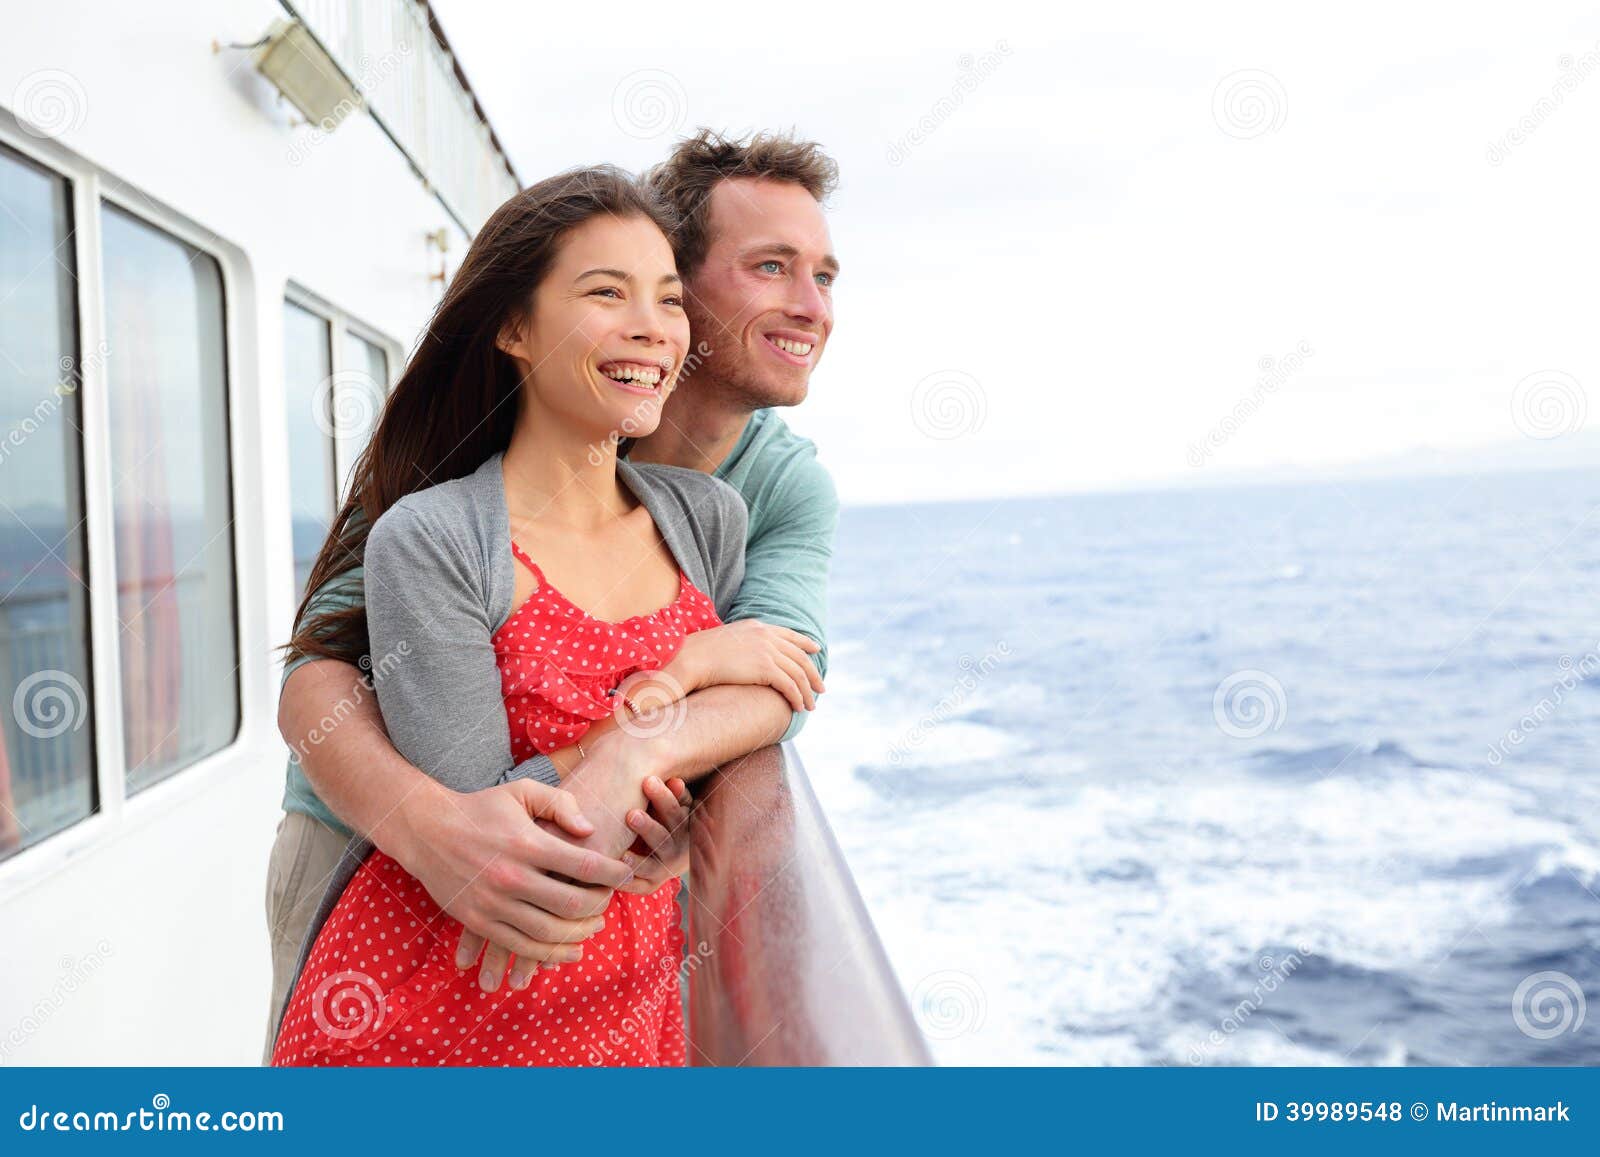 Cruise Ship Couple Romantic Enjoying Travel Stock Photo 